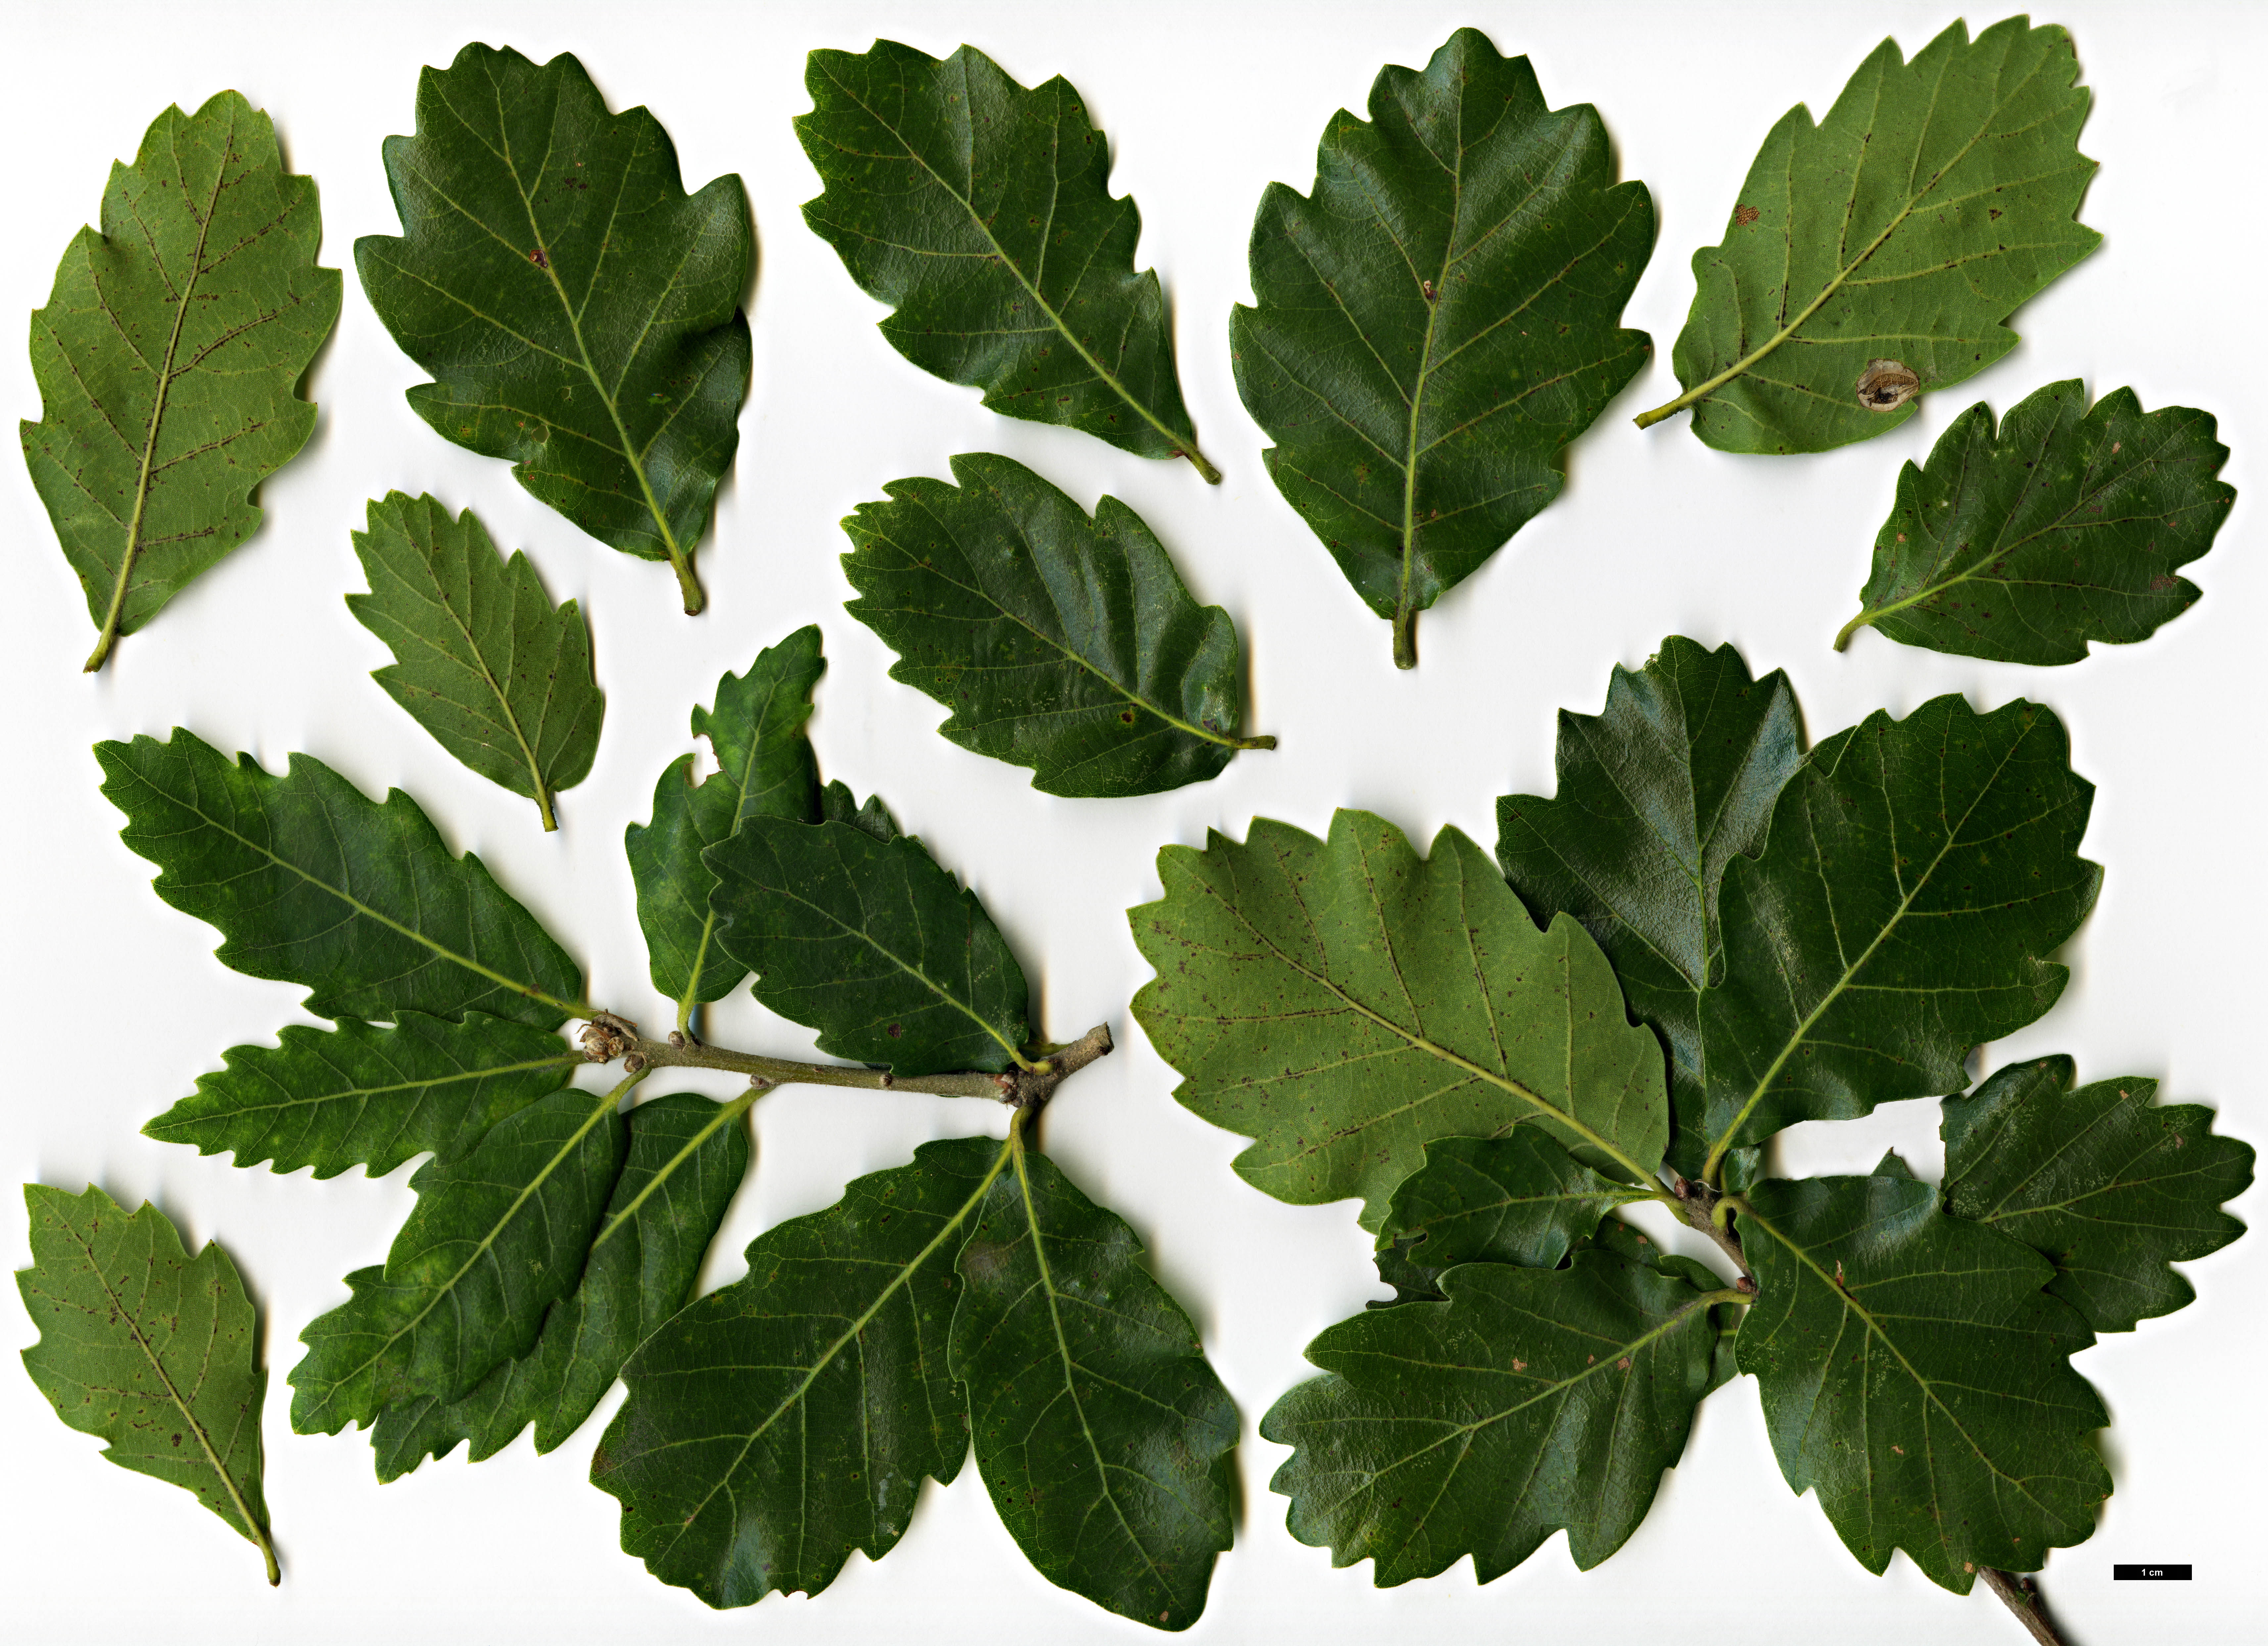 High resolution image: Family: Fagaceae - Genus: Quercus - Taxon: ×turneri - SpeciesSub: 'Spencer Turner' (Q.ilex × Q.robur)